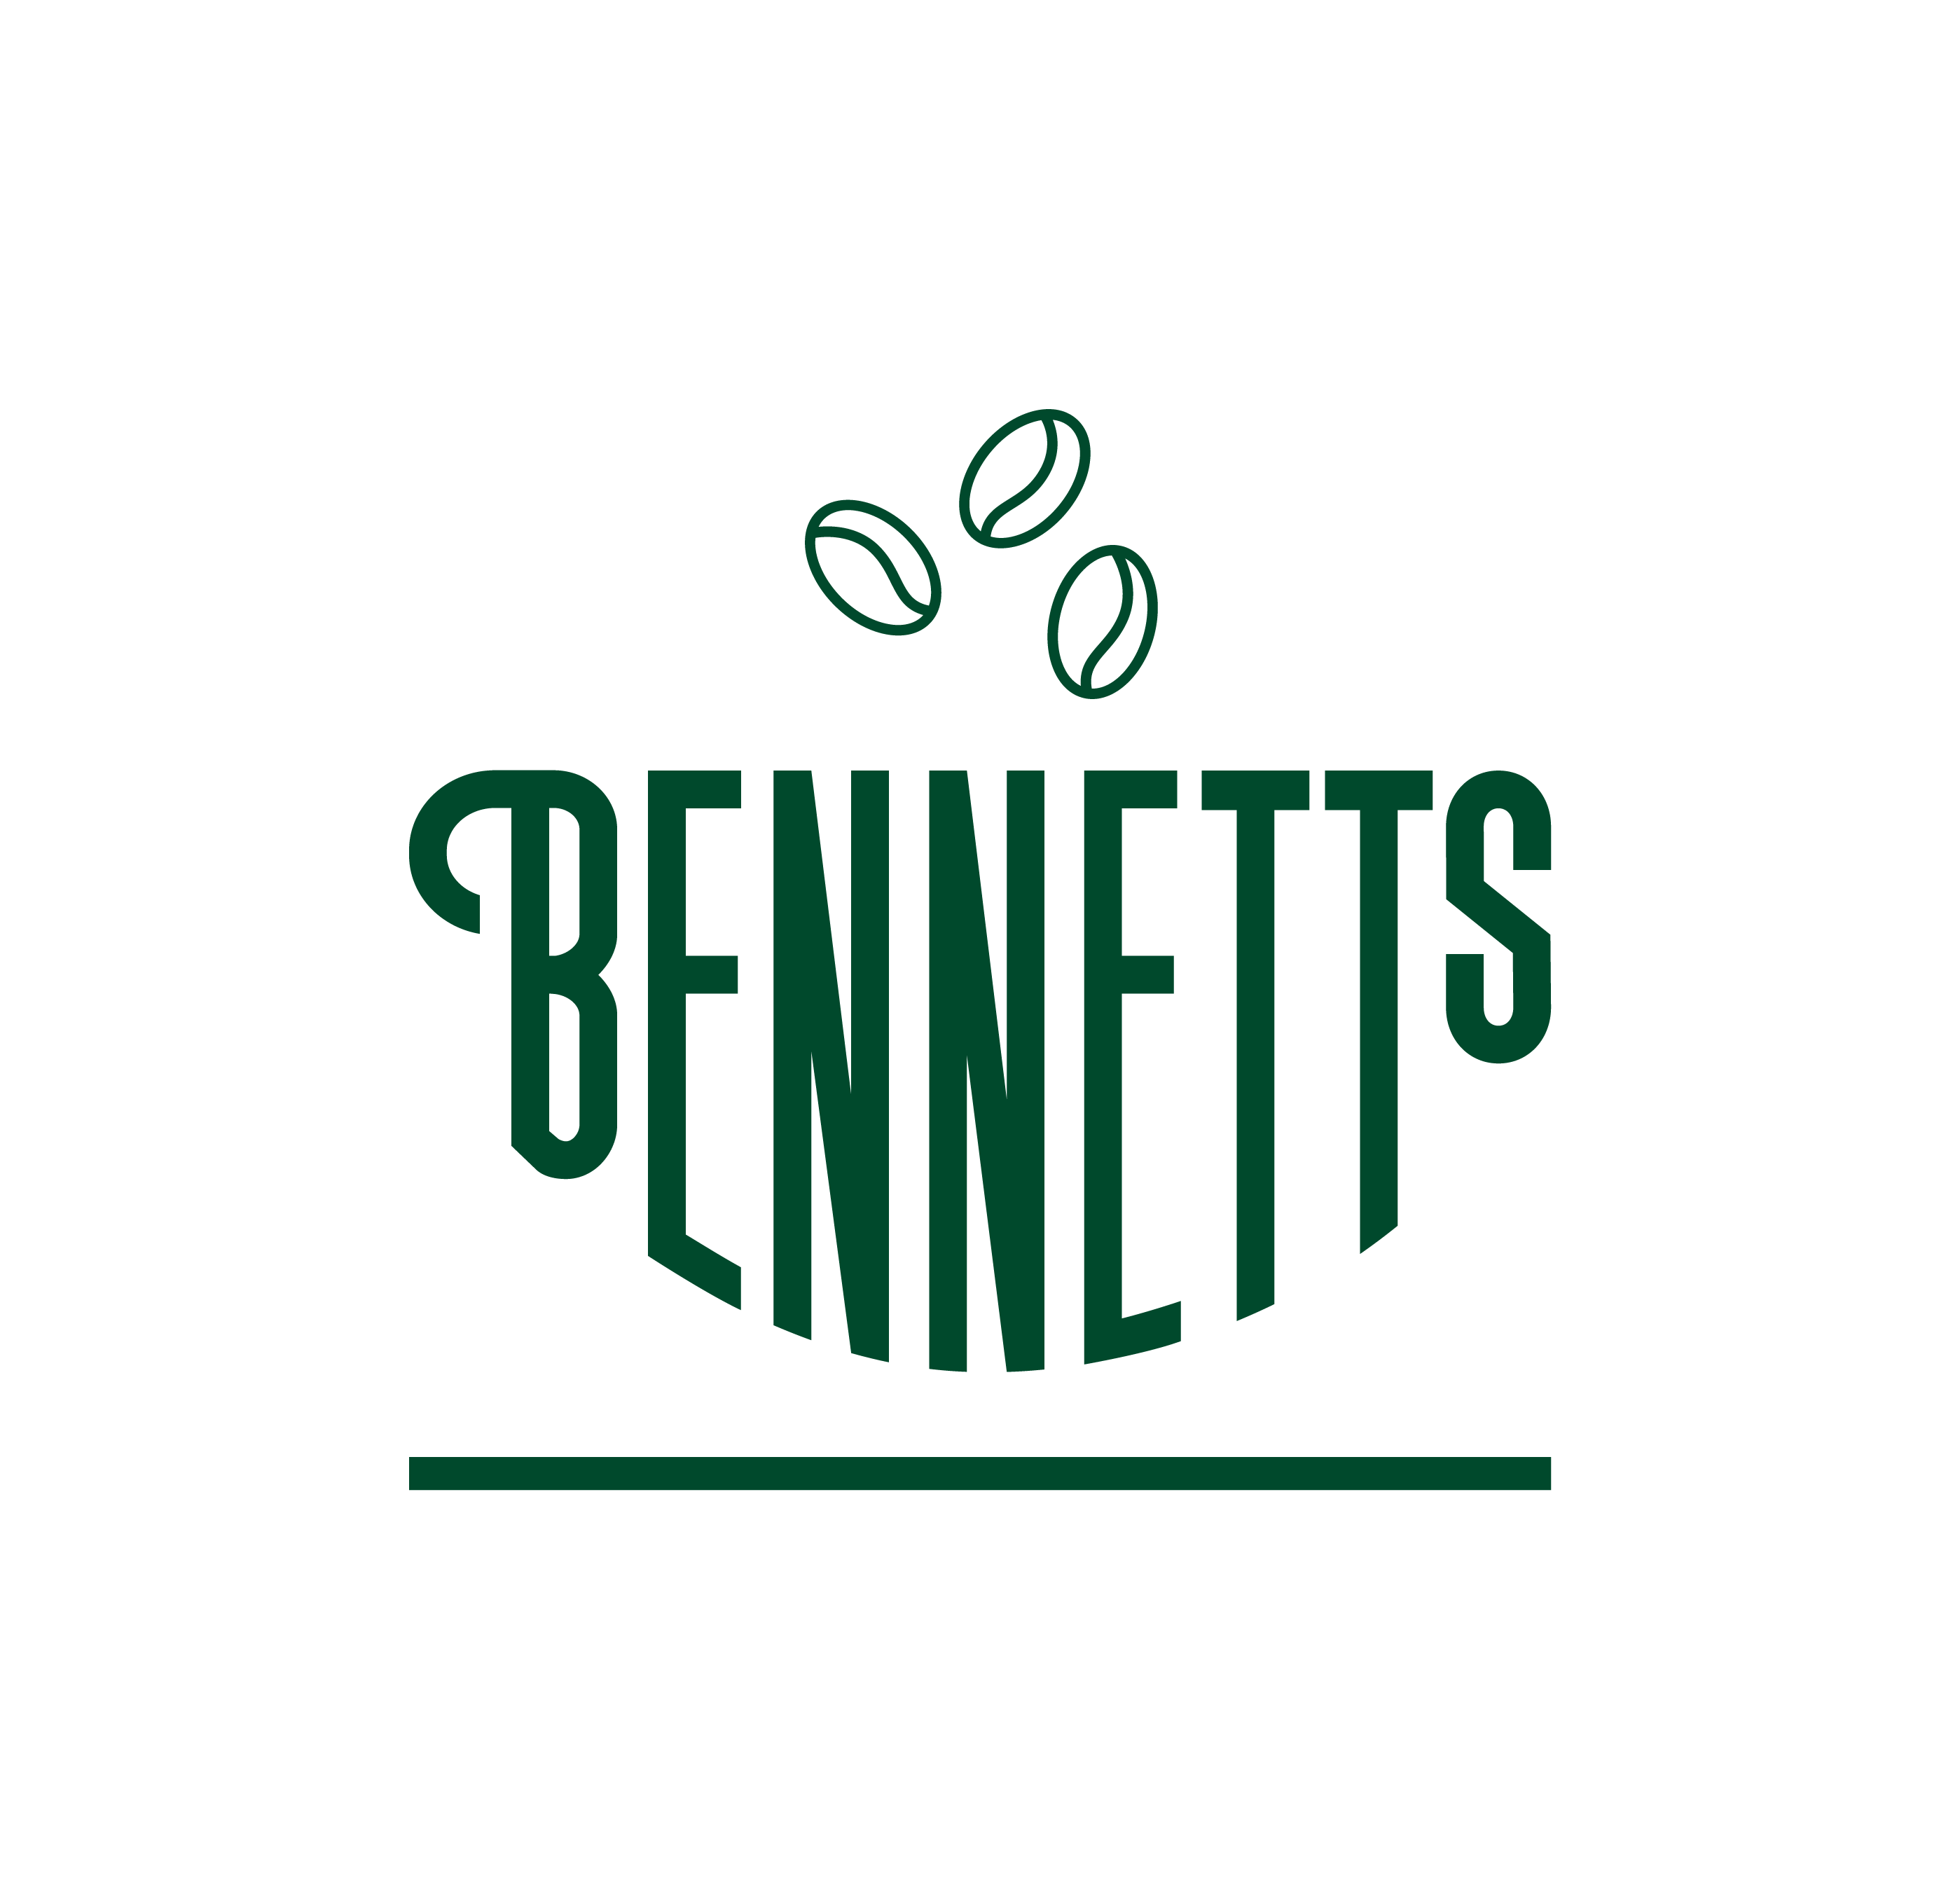 Bennetts new logo